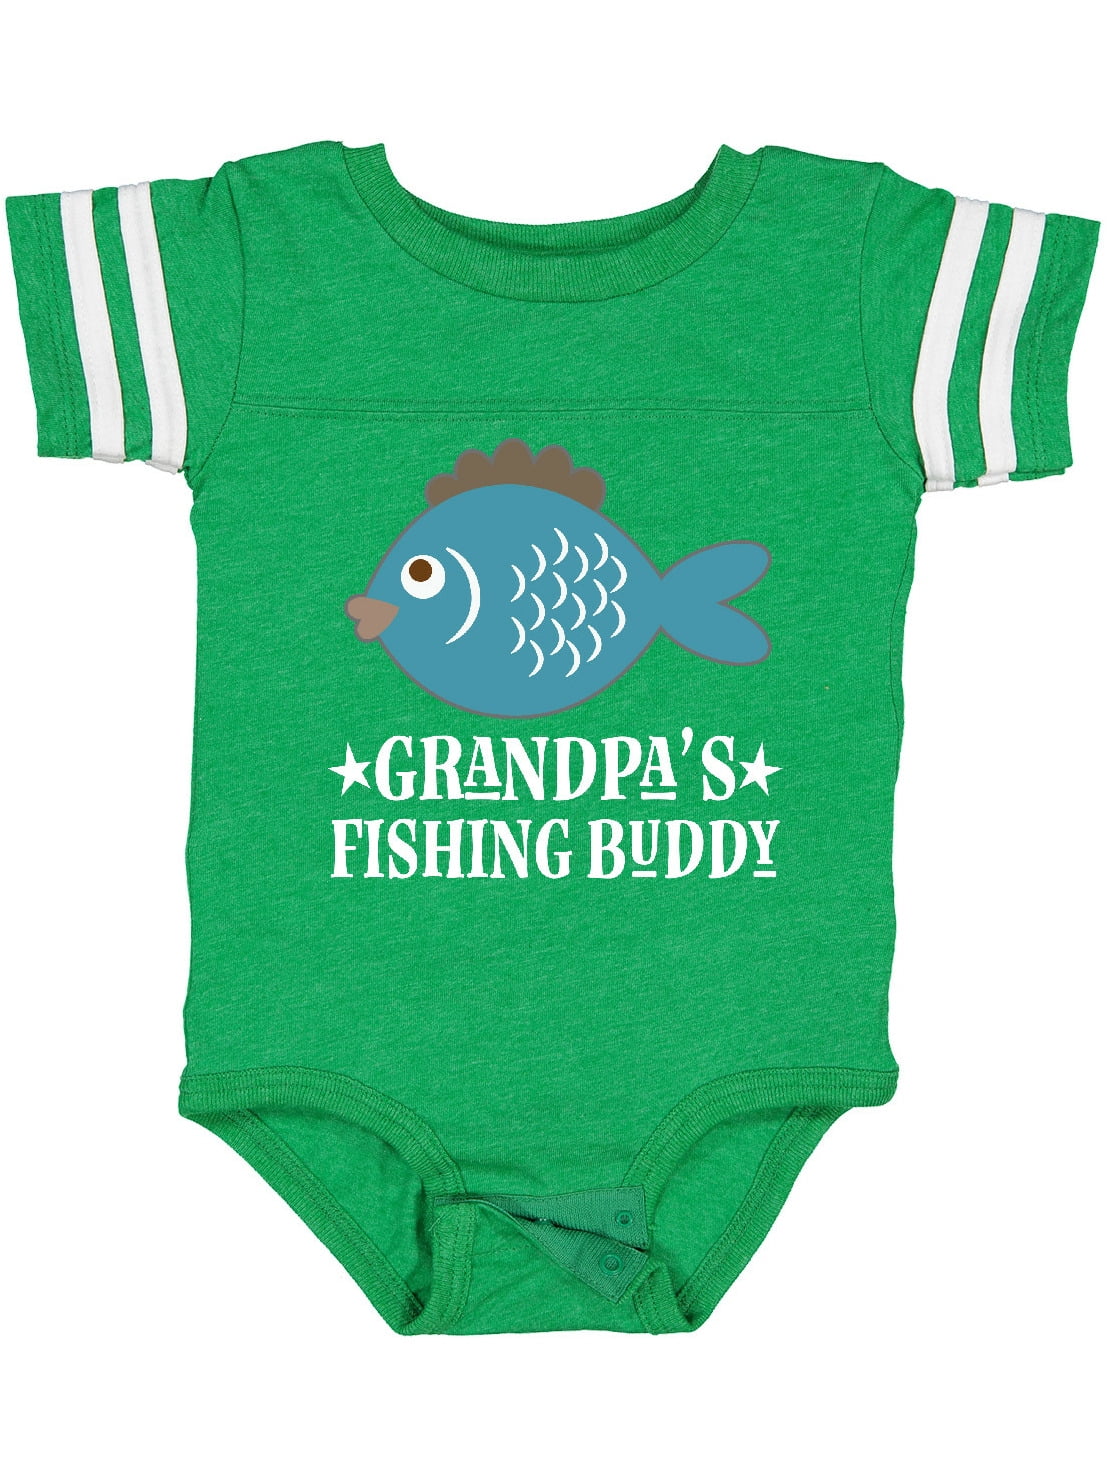 My Favorite Fishing Buddy Calls Me Grandpa Fisher' Organic Short-Sleeved  Baby Bodysuit